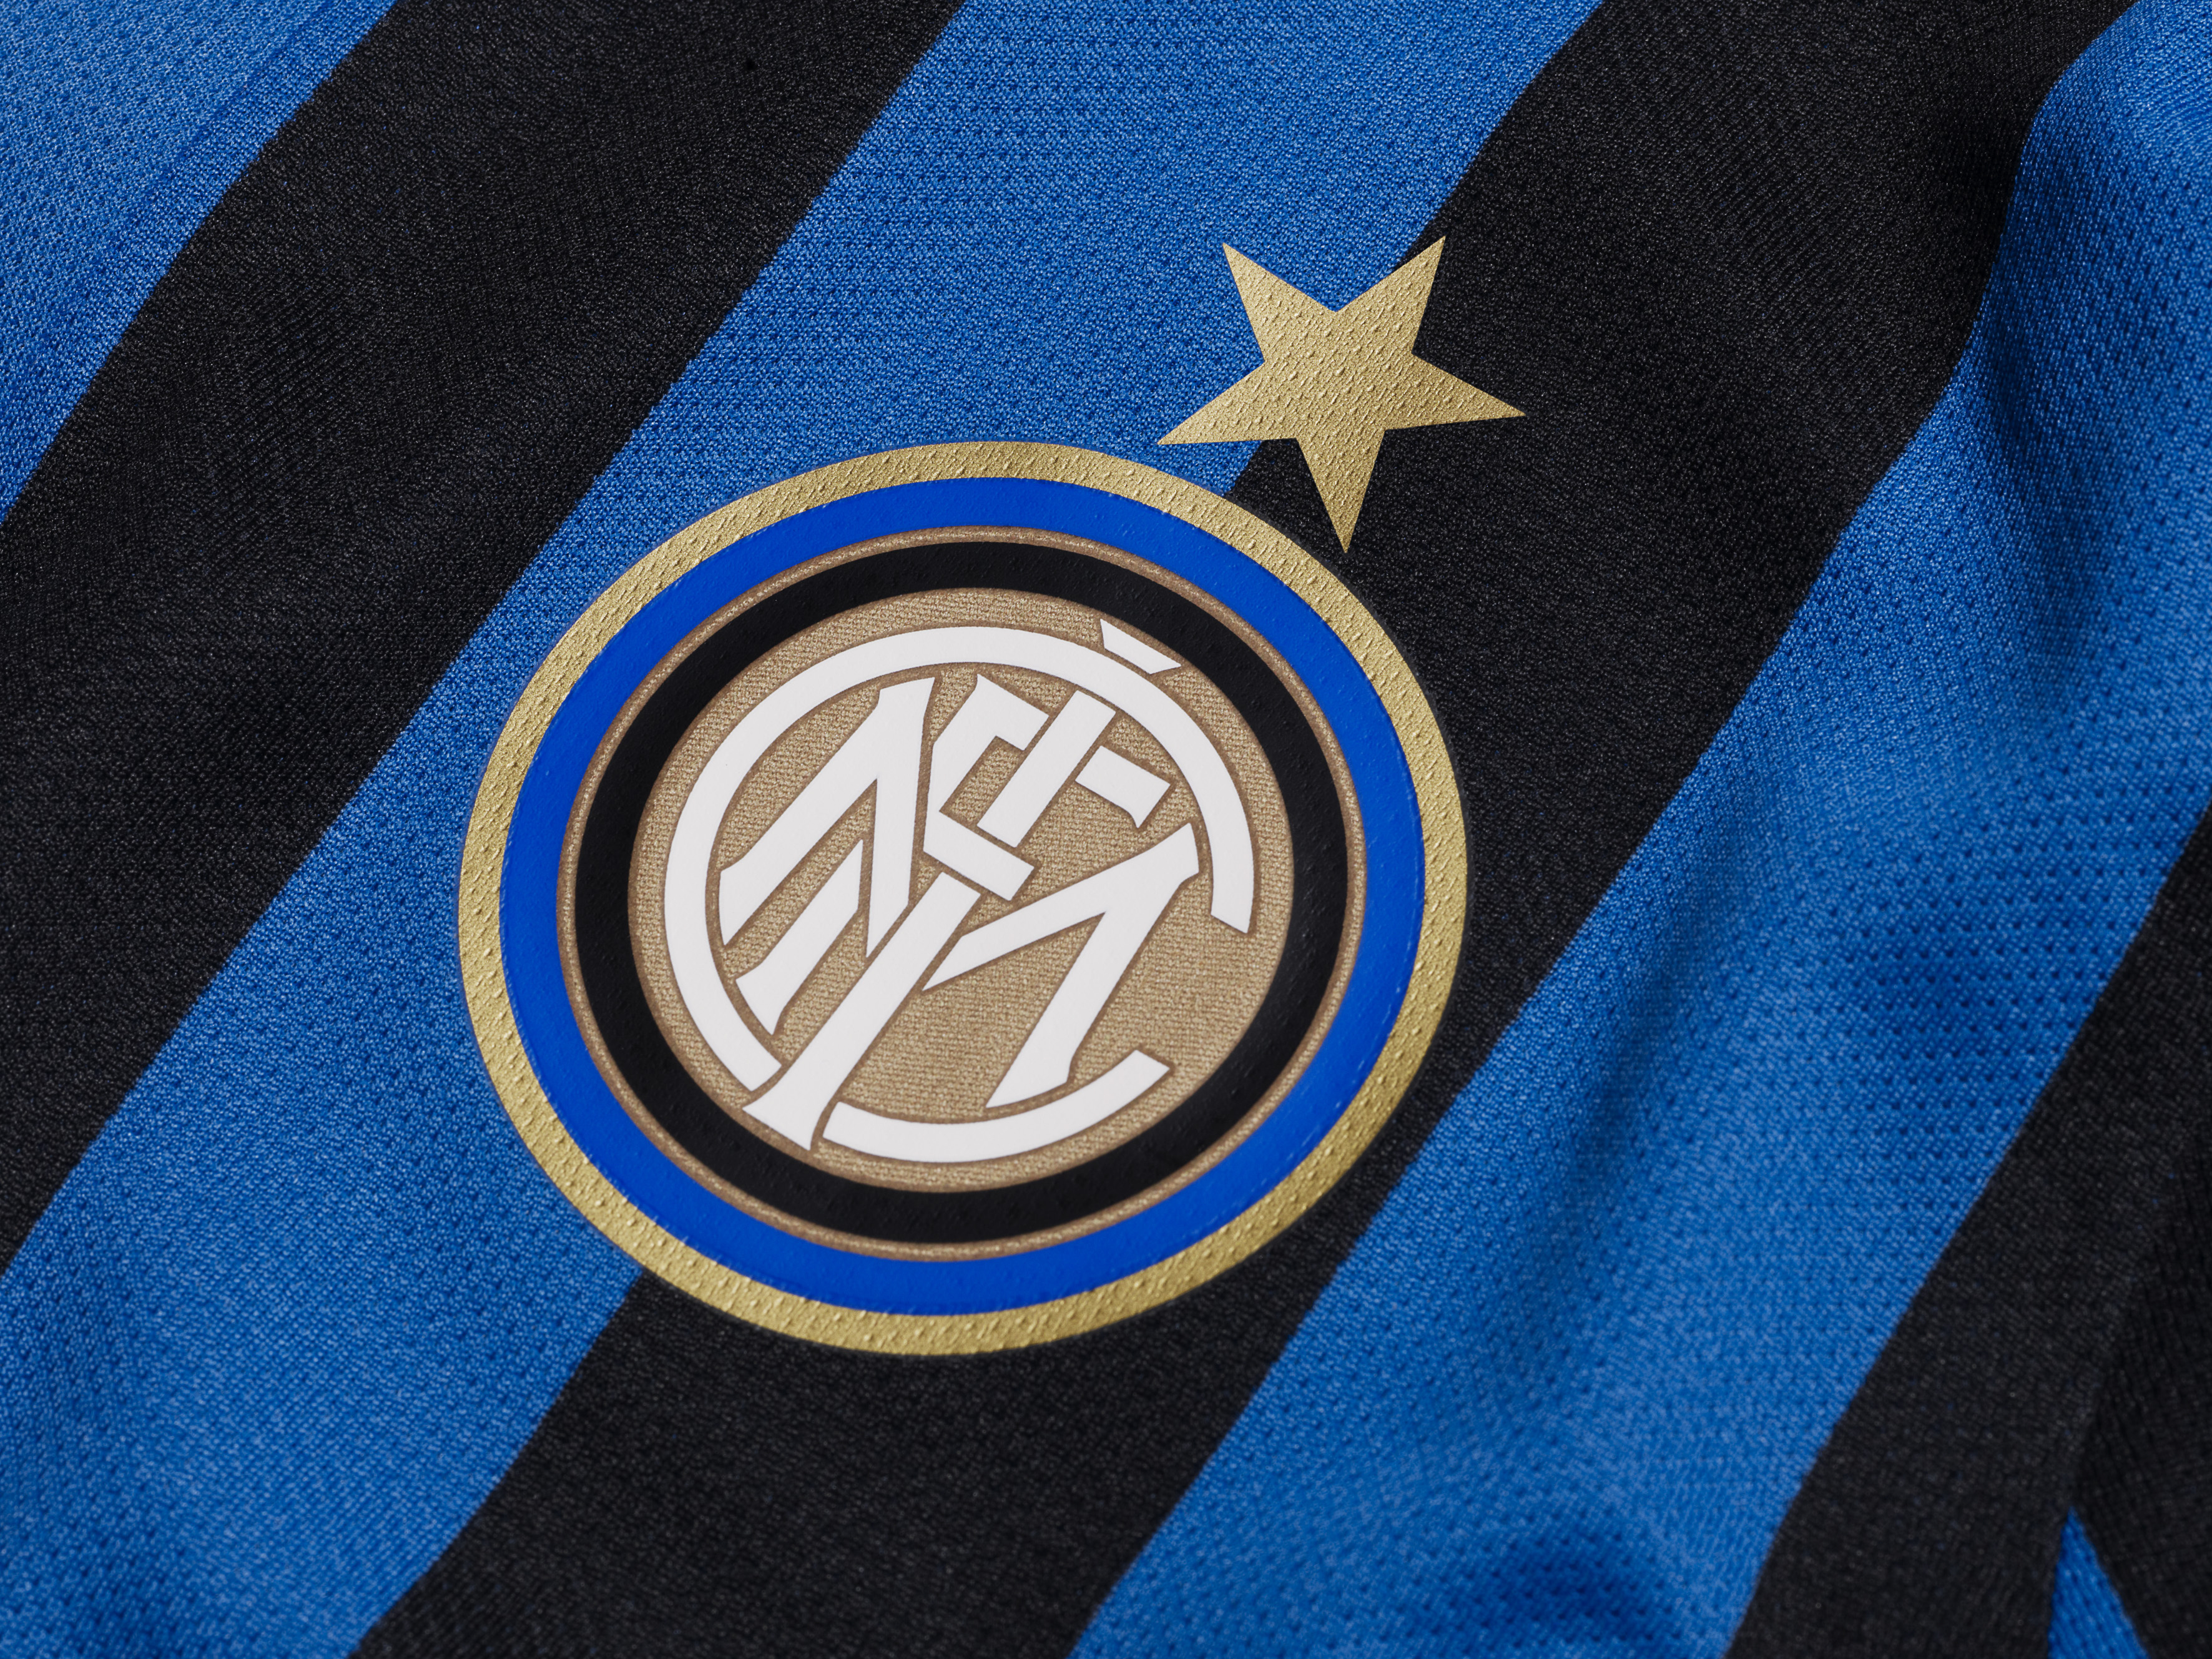 Inter r. Обои FC Internazionale Milano.